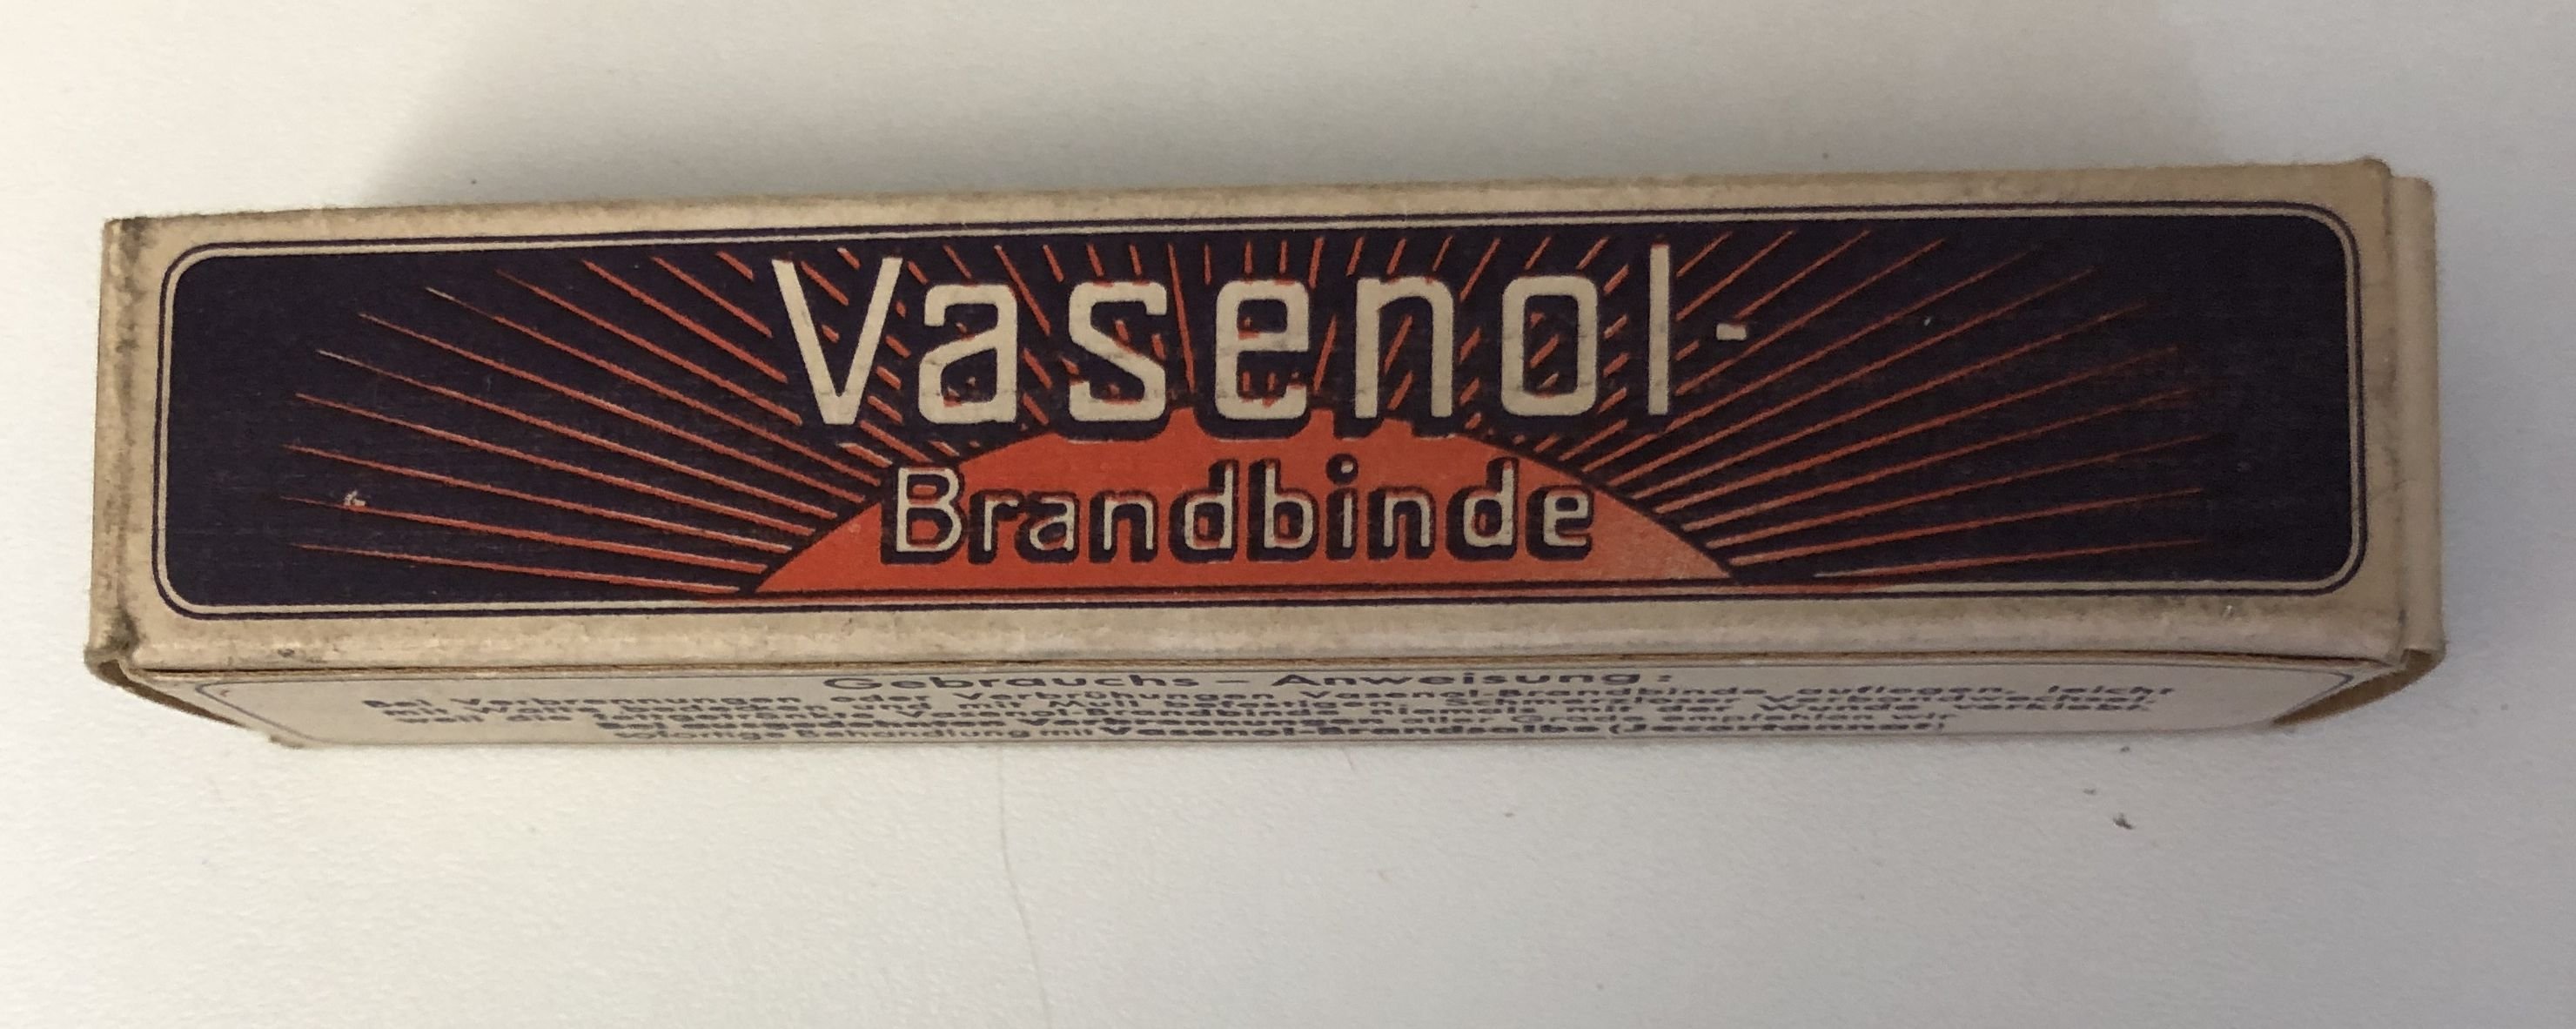 Vasenol Brandbinde (Krankenhausmuseum Bielefeld e.V. CC BY-NC-SA)